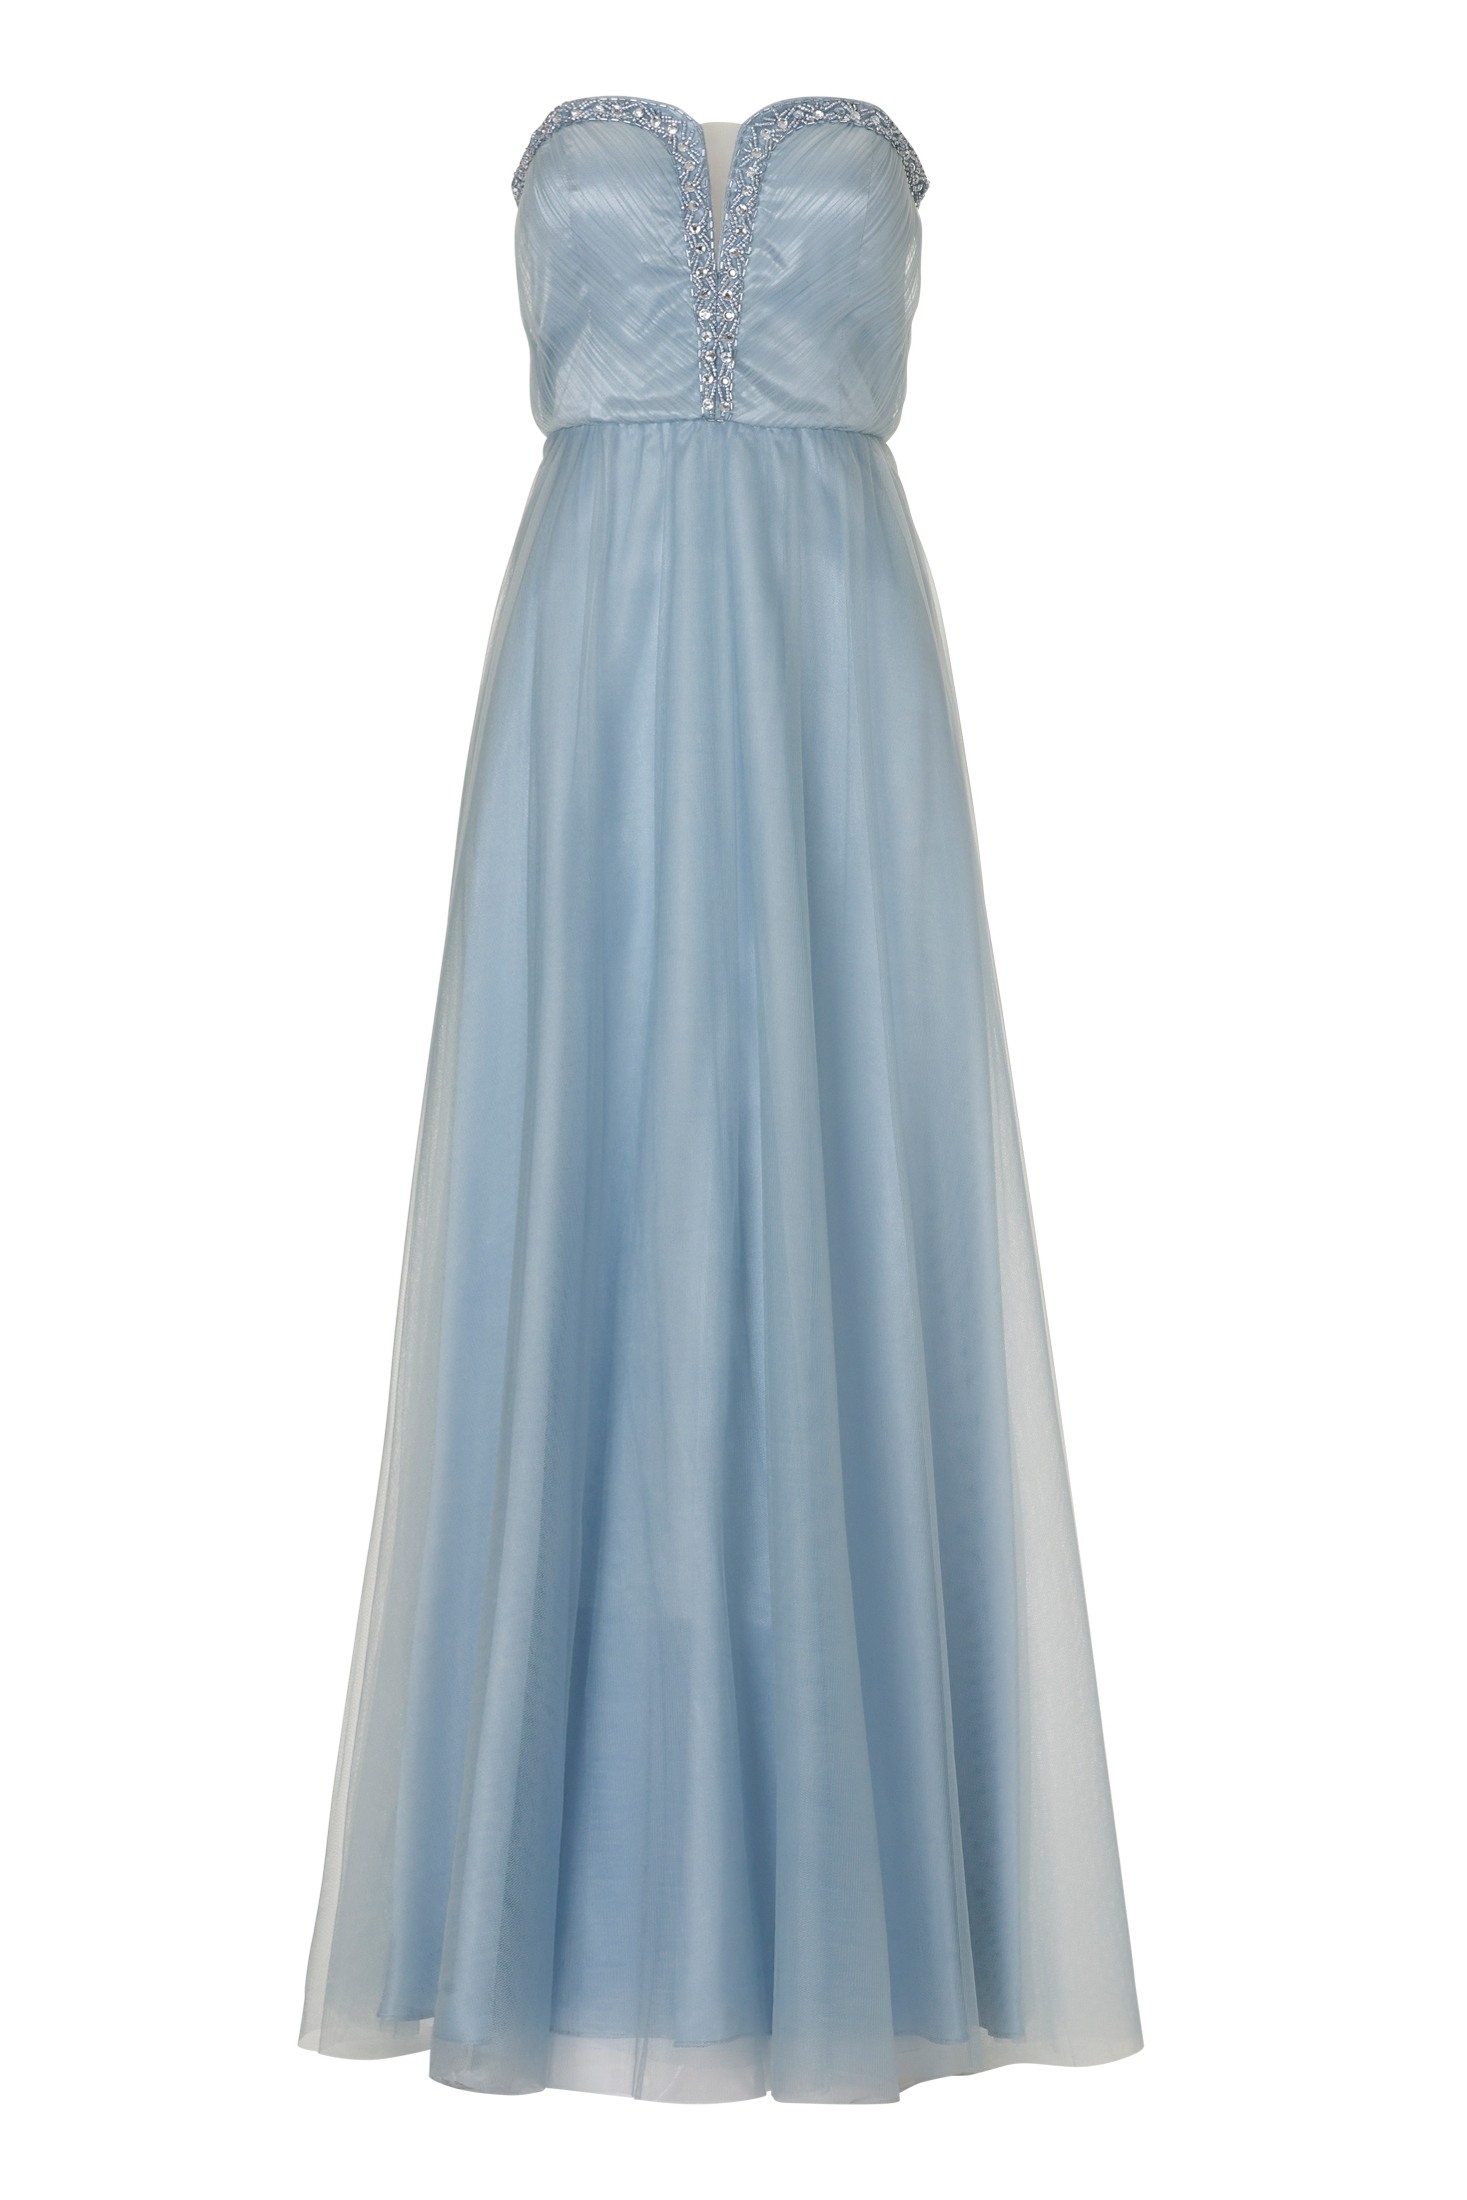 Designer Erstaunlich Langes Kleid Hellblau VertriebFormal Leicht Langes Kleid Hellblau Design